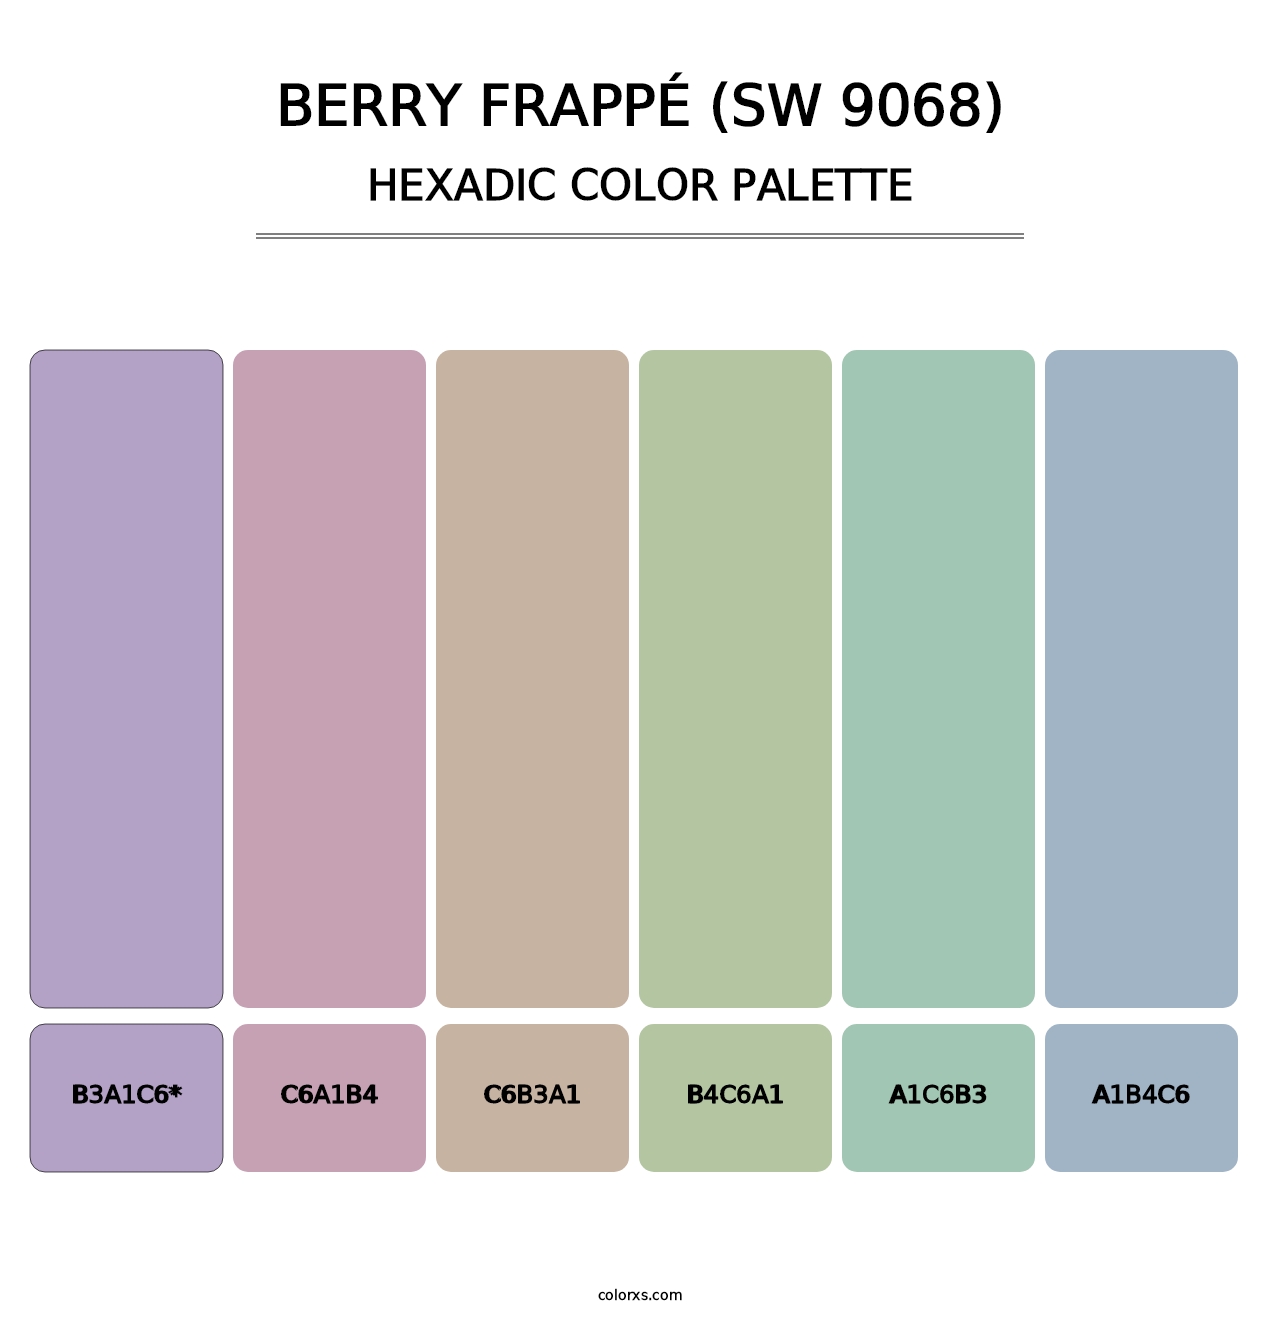 Berry Frappé (SW 9068) - Hexadic Color Palette